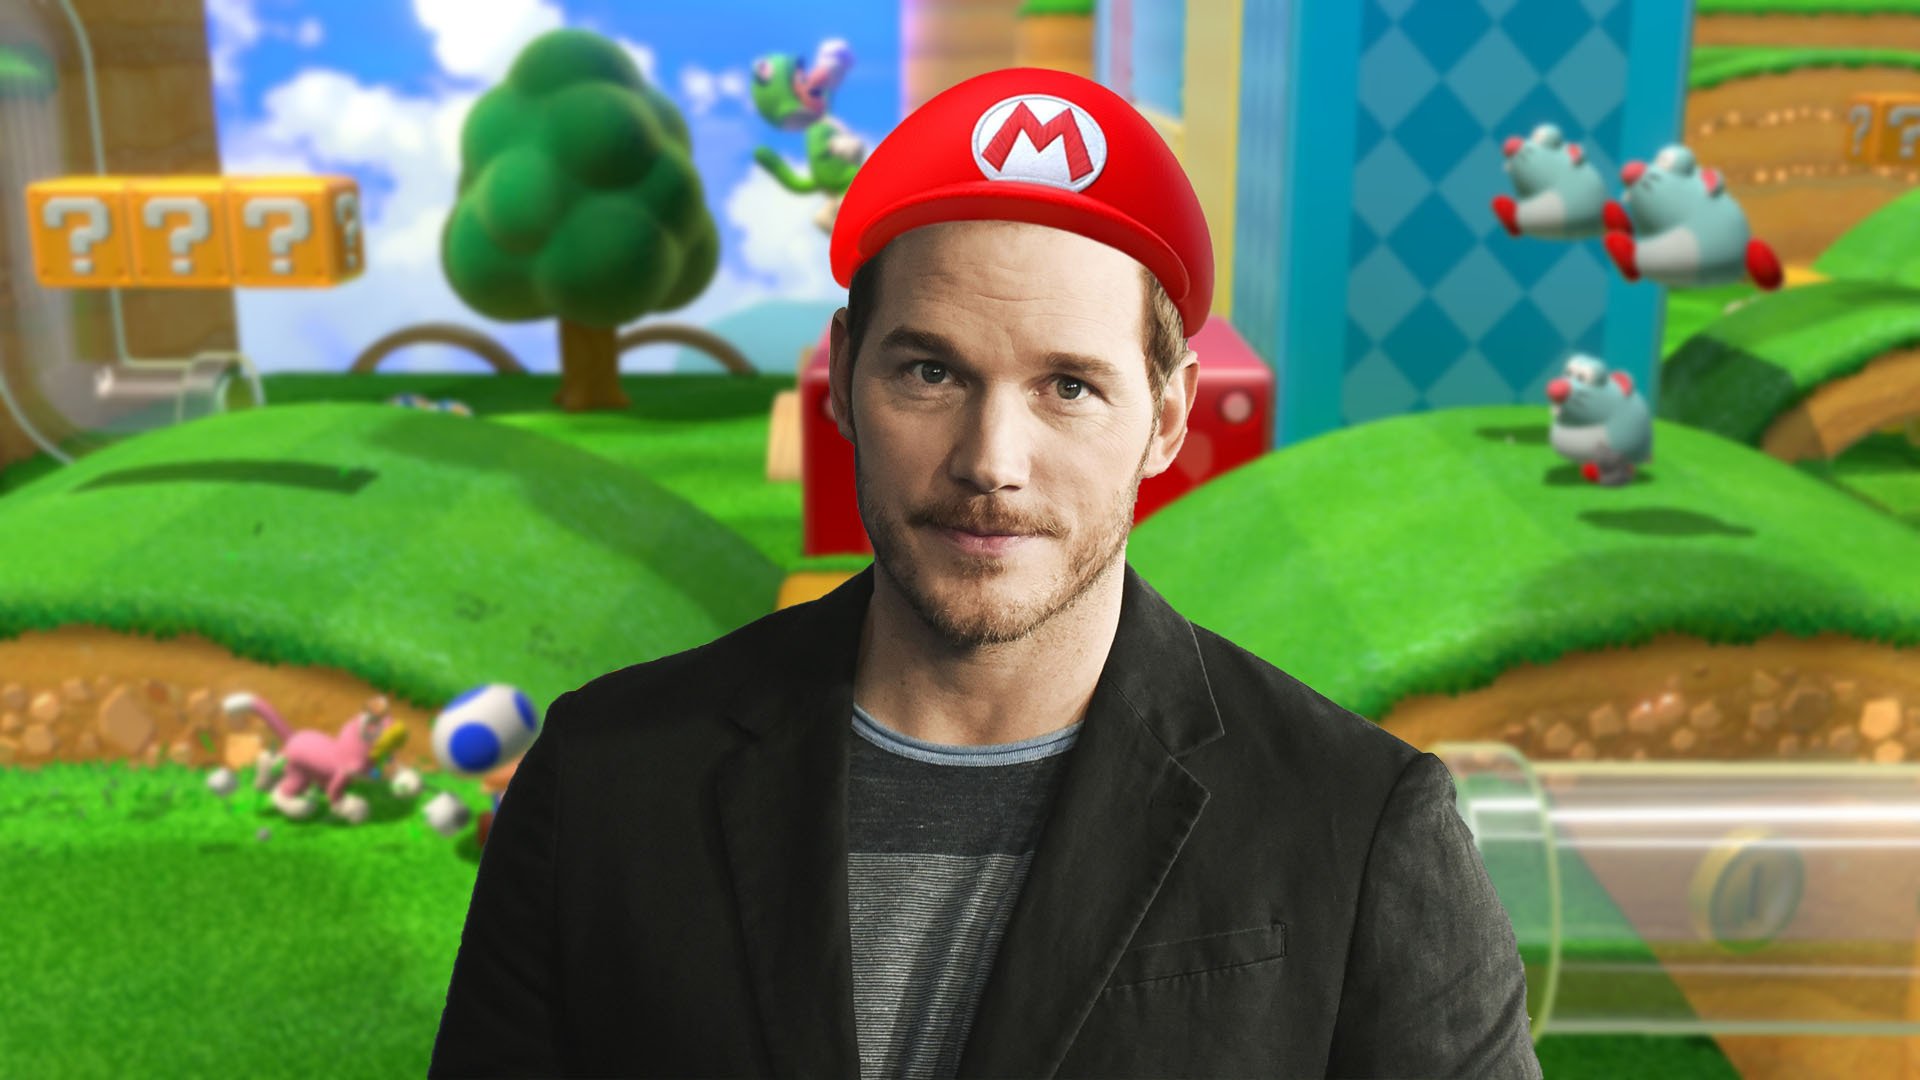 Illumination Boss Addresses Chris Pratt 'Super Mario Bros.' Backlash